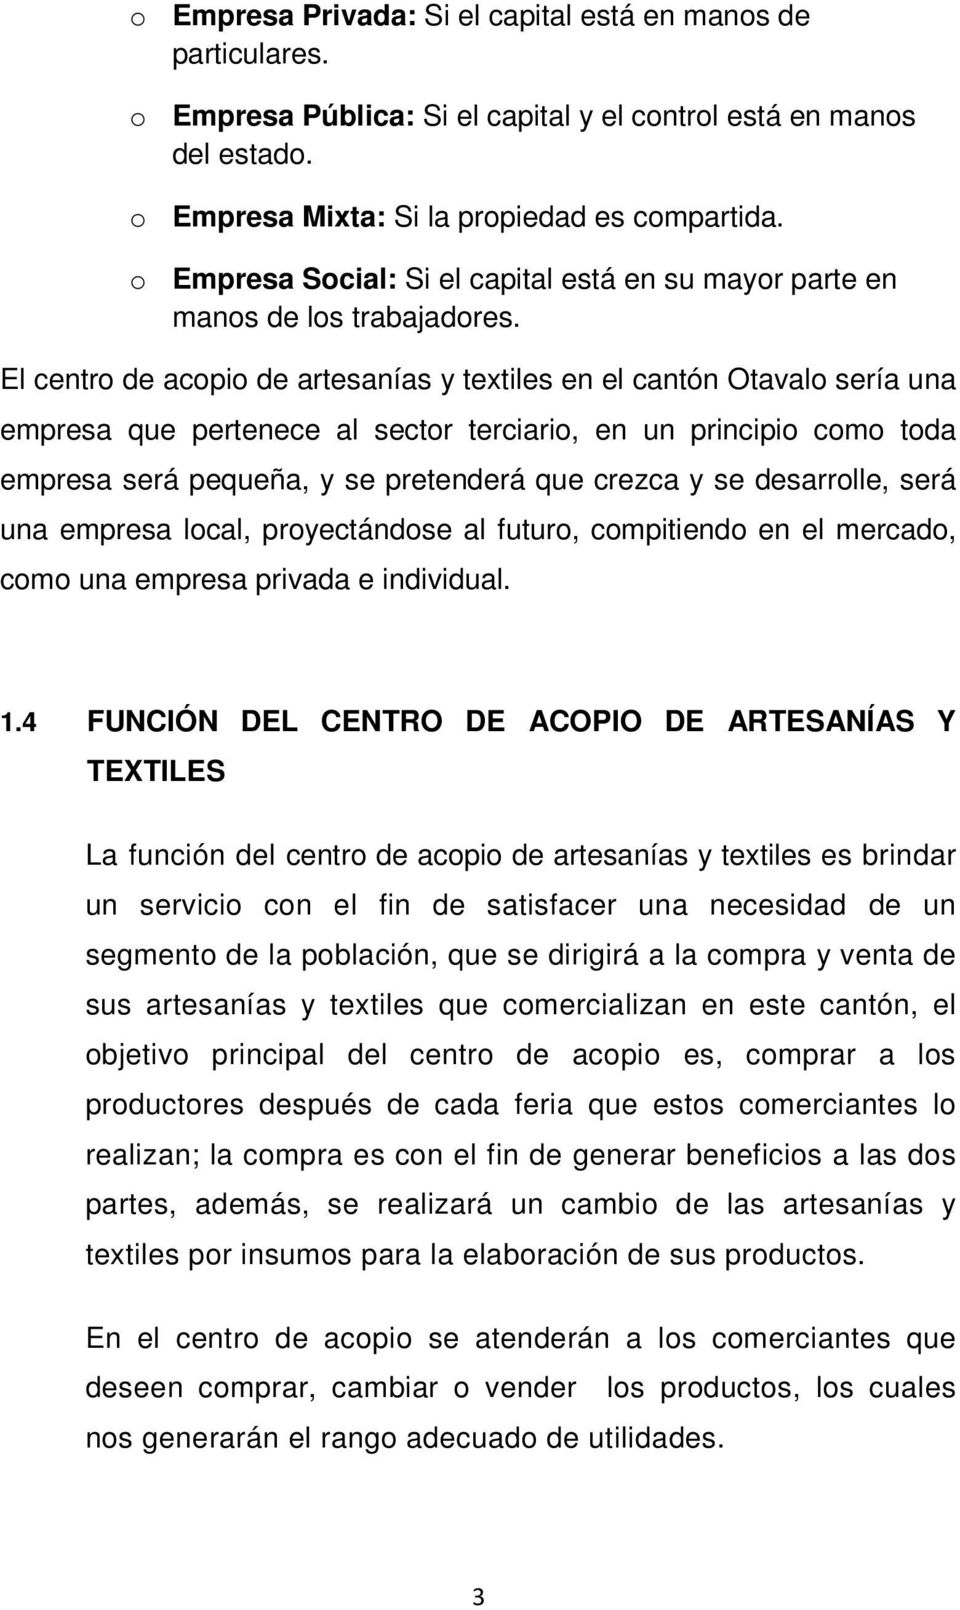 El centro de acopio de artesanías y textiles en el cantón Otavalo sería una empresa que pertenece al sector terciario, en un principio como toda empresa será pequeña, y se pretenderá que crezca y se